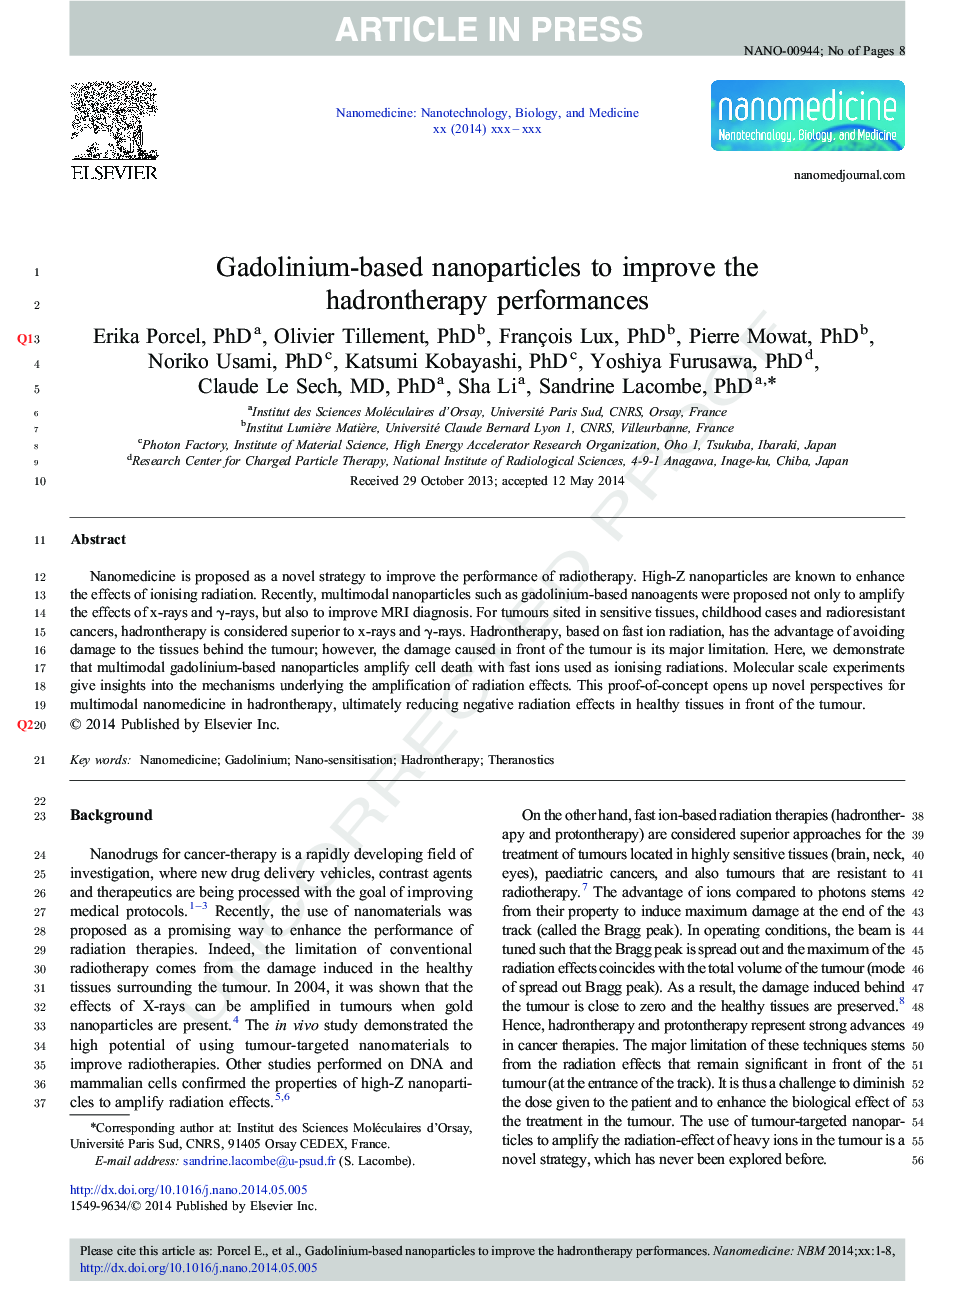 نانوذرات مبتنی بر گادولینیم برای بهبود عملکرد حادثه 